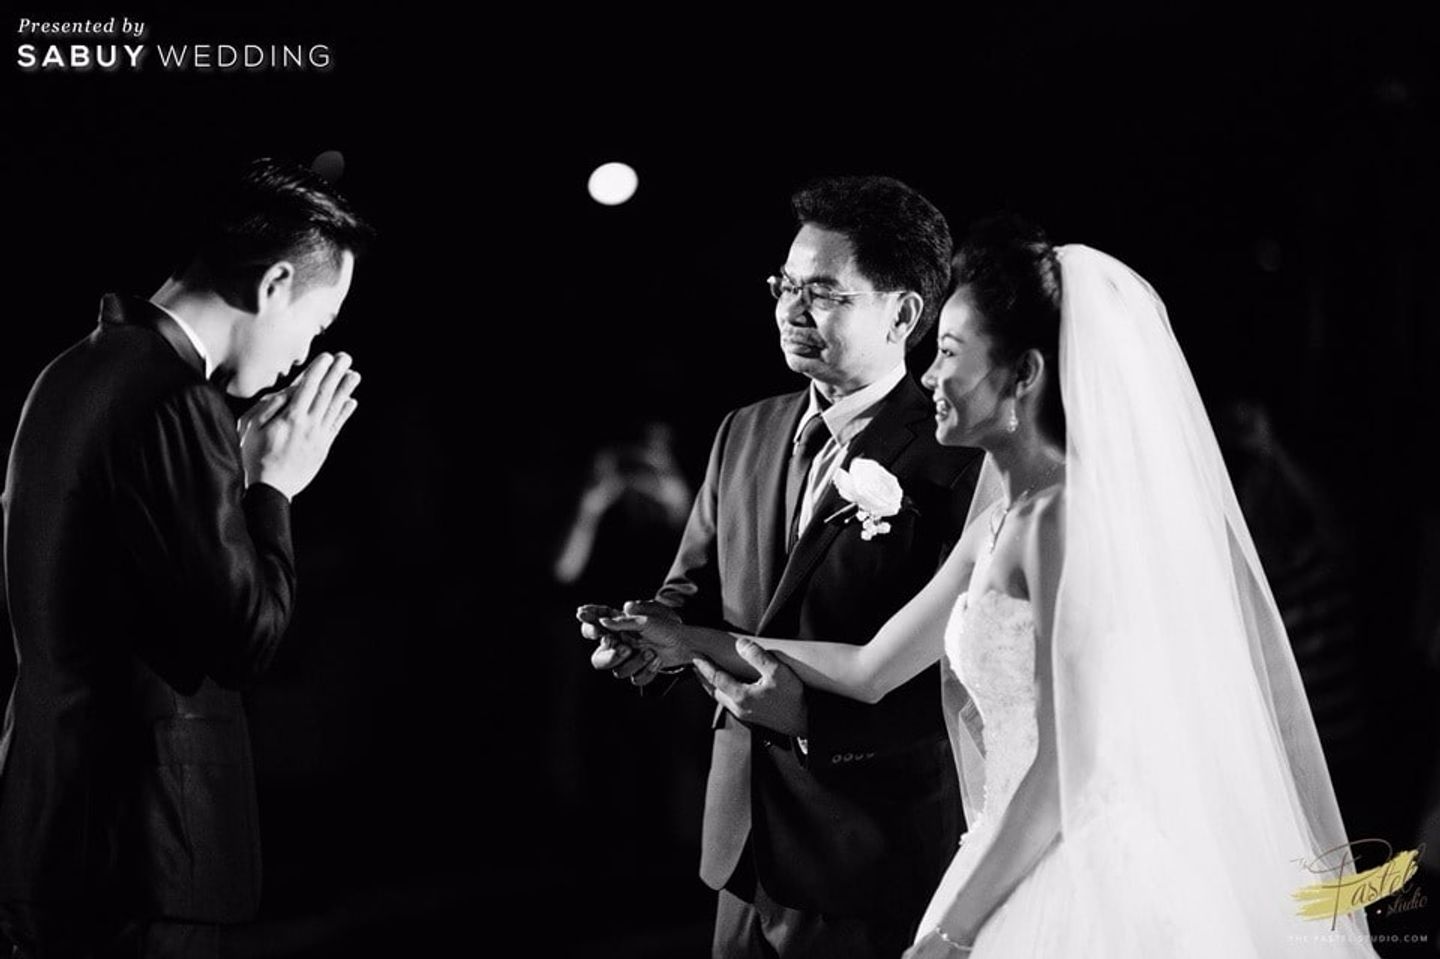 พิธีแต่งงาน,งานแต่งงาน,บ่าวสาว,พ่อเจ้าสาว รีวิวงานแต่งเน้นแสงสี ลุคหวานพอดีด้วยสีพาสเทล @Noeud d'Amour Saraburi